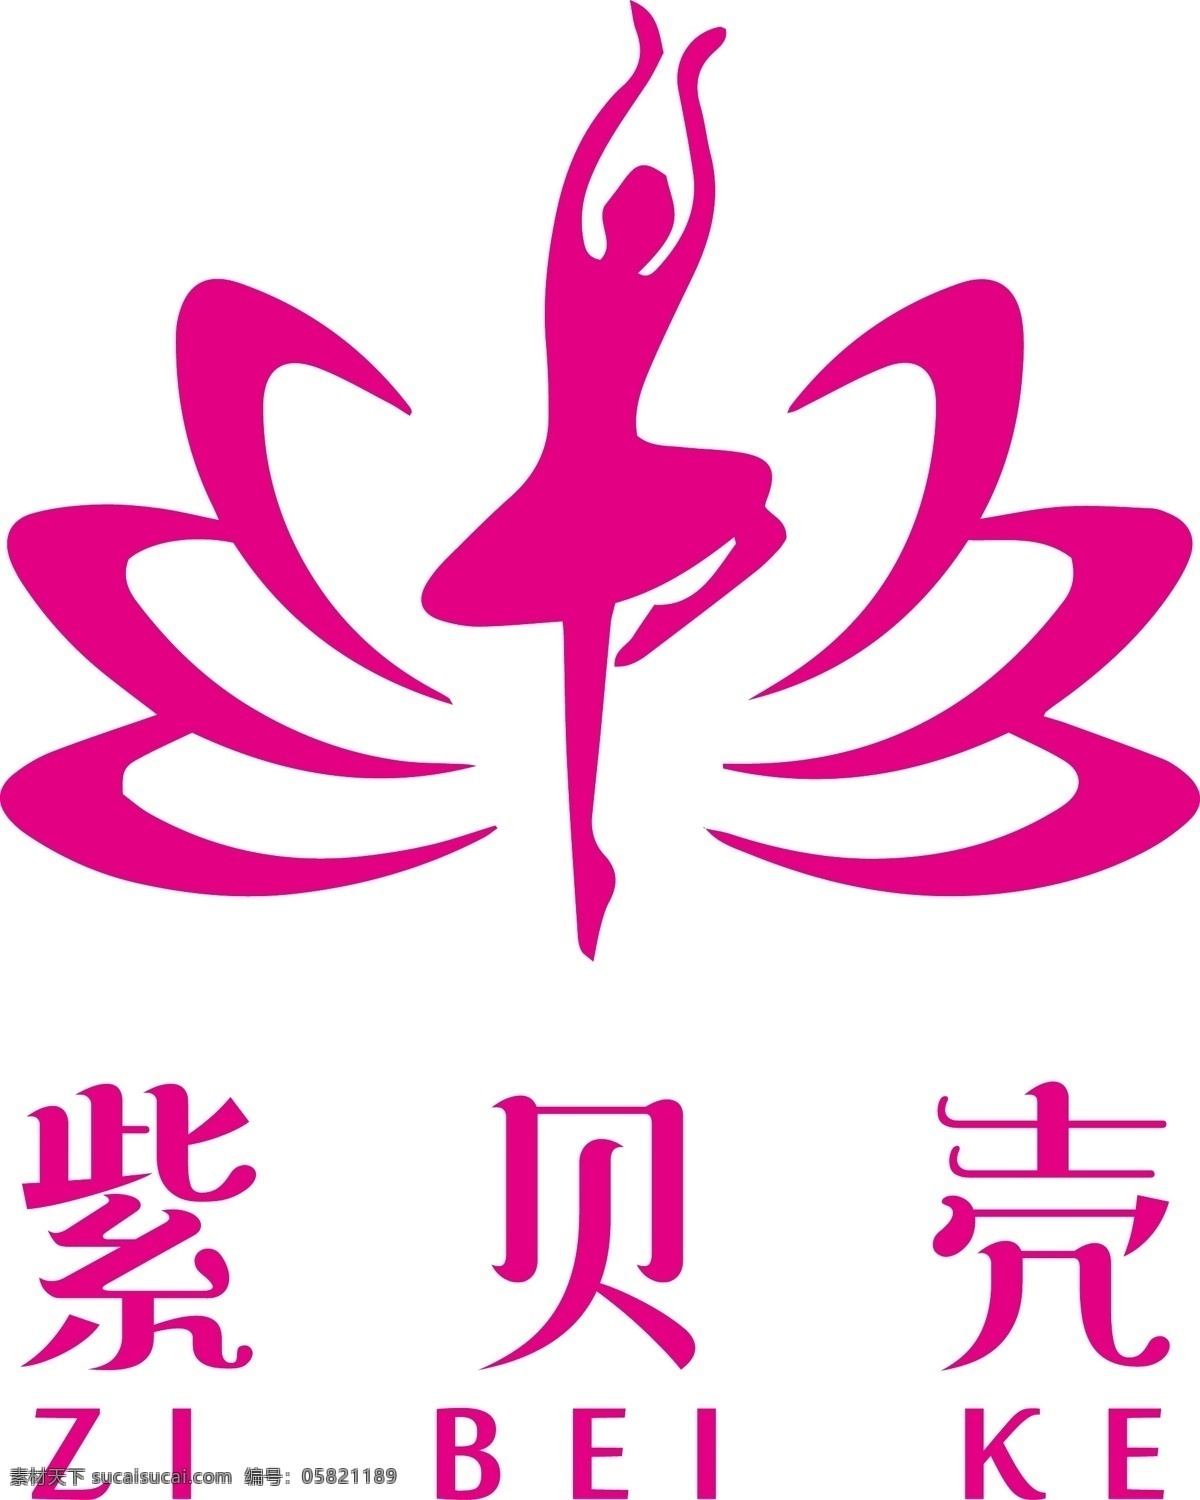 紫贝壳 舞蹈 芭蕾 荷花 跳舞 logo 标志 芭蕾舞 剪影 舞蹈剪影 跳舞剪影